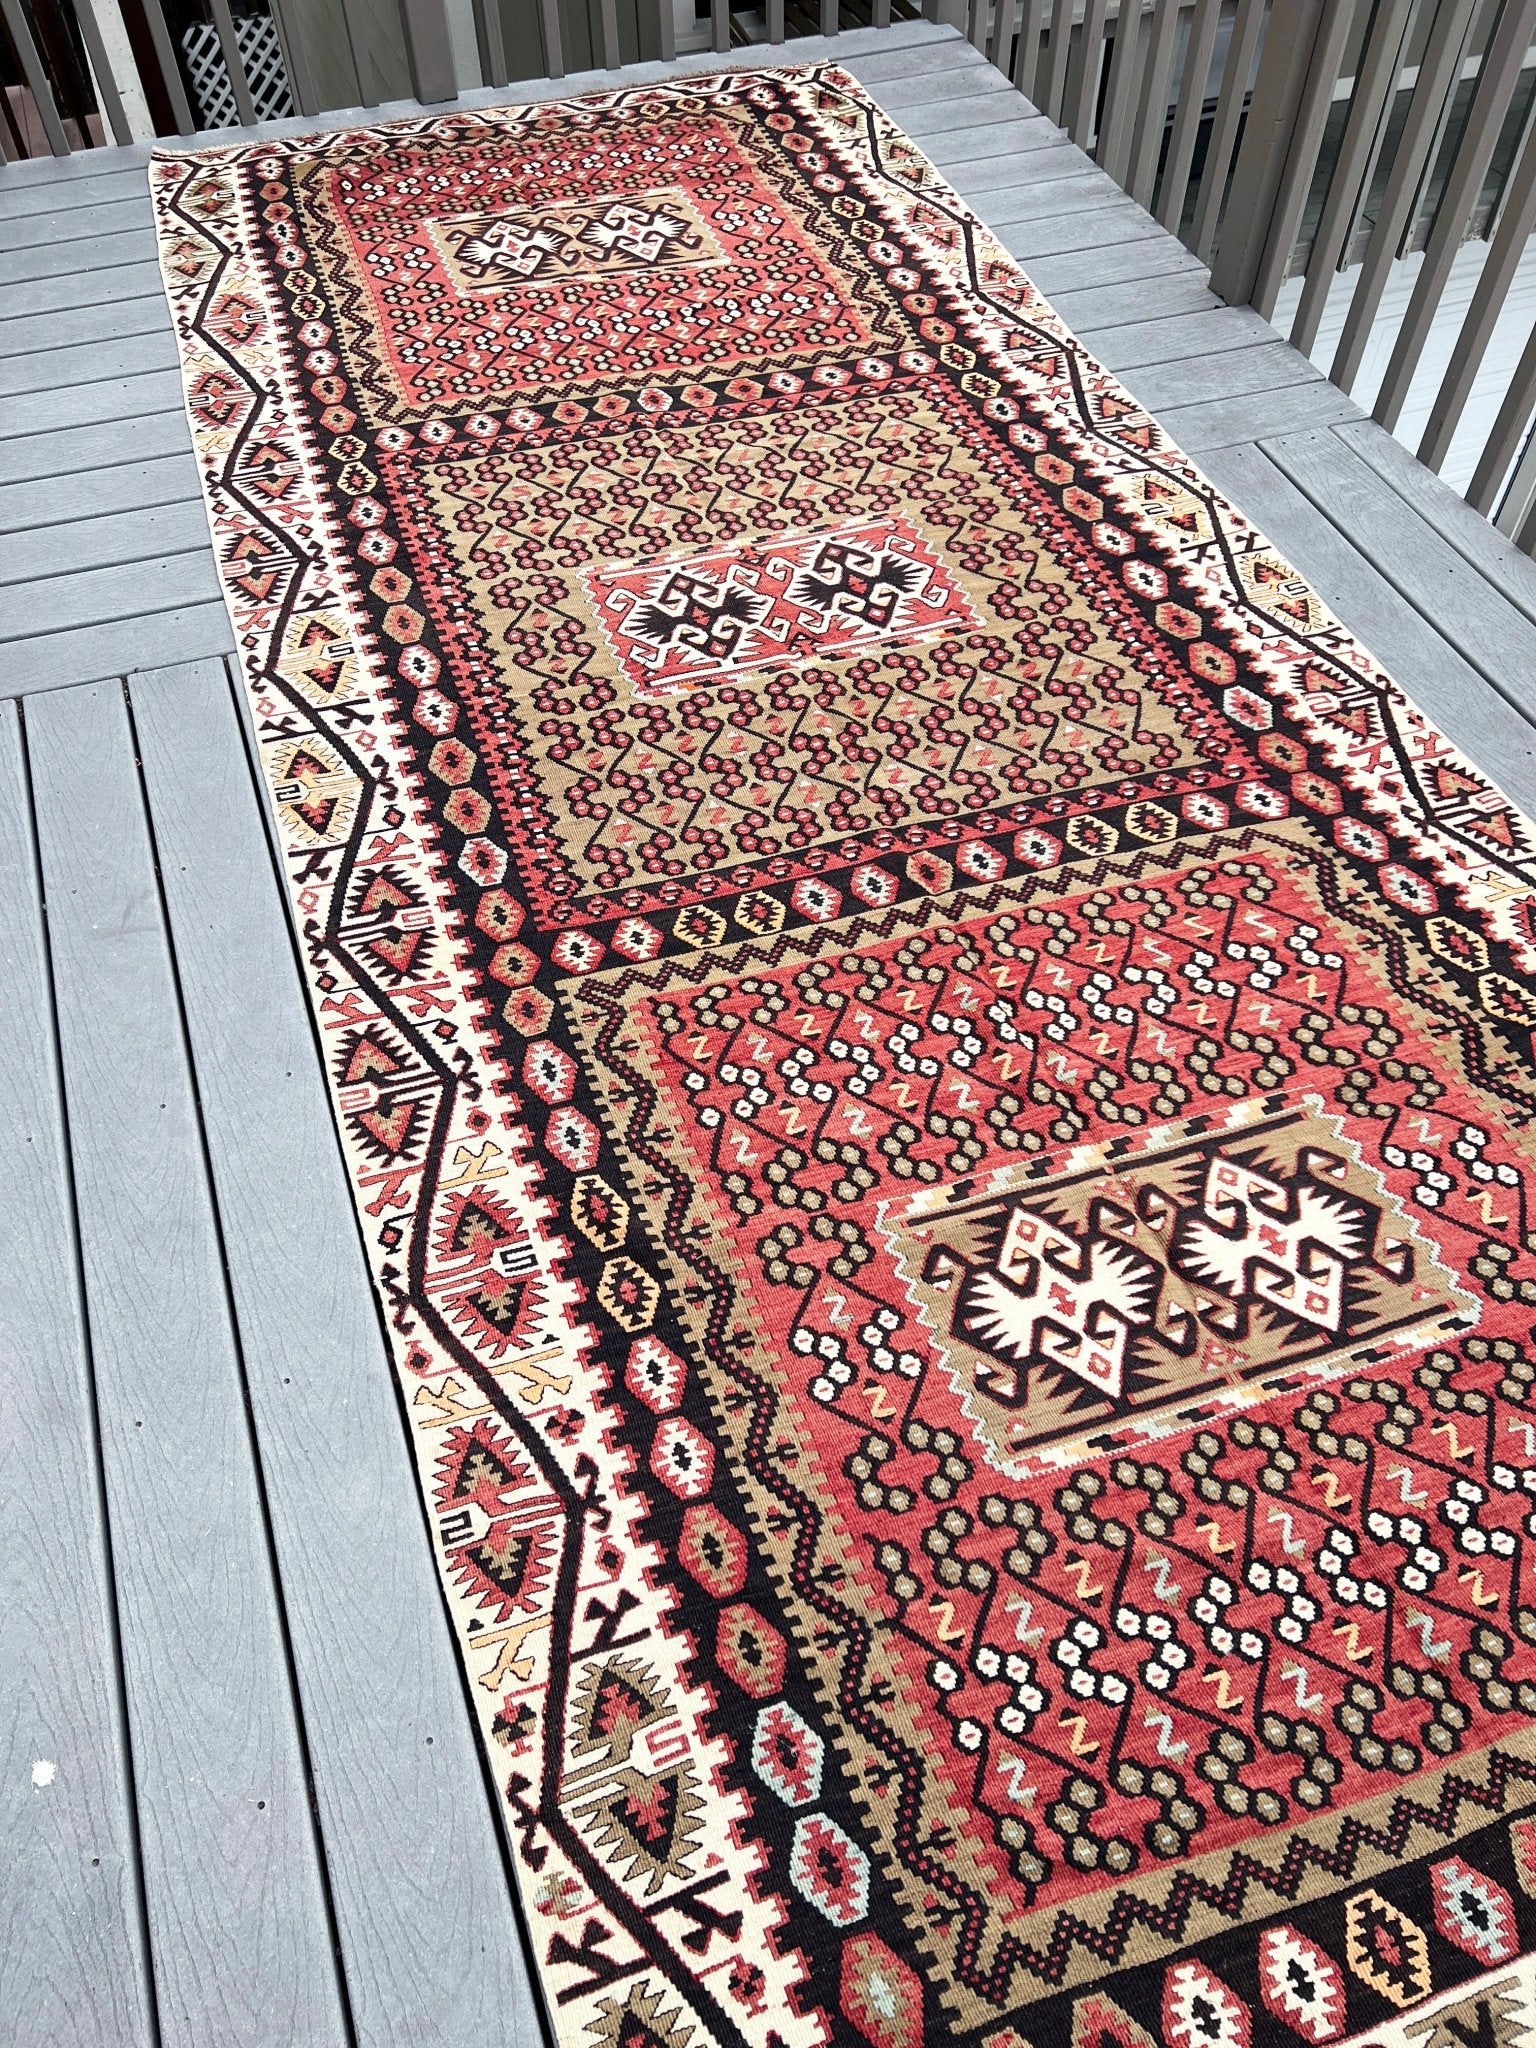 Kayseri antique wide runner vintage turkish kilim rug shop san francisco bay area. Buy handmade wool Oriental rug online